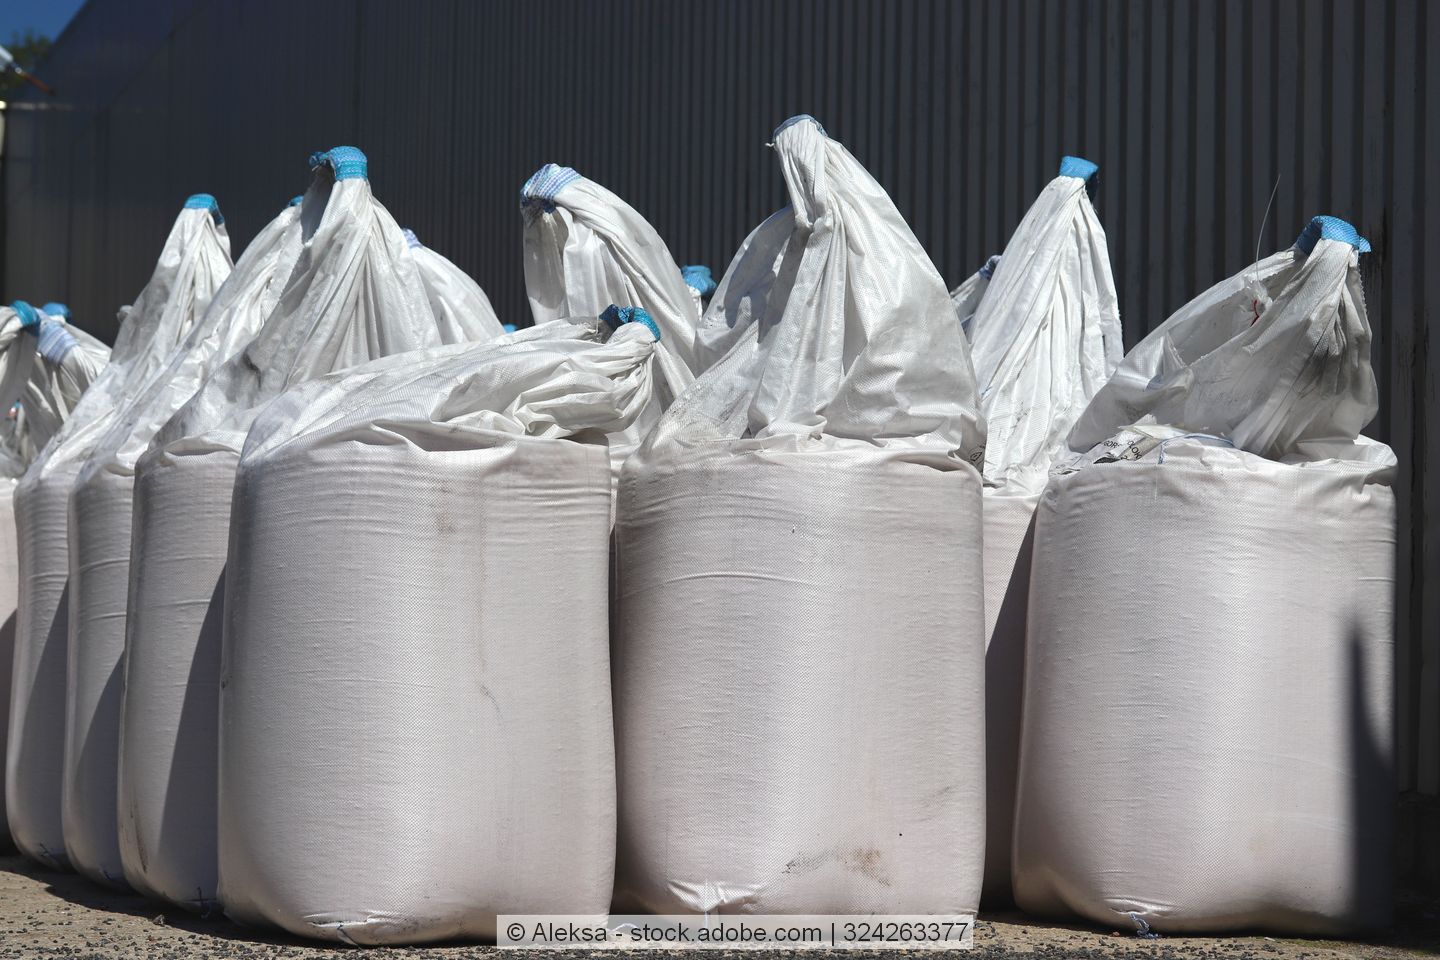 Big-Bags mit Kunstdünger für die Landwirtschaft stehen nebeneinander.